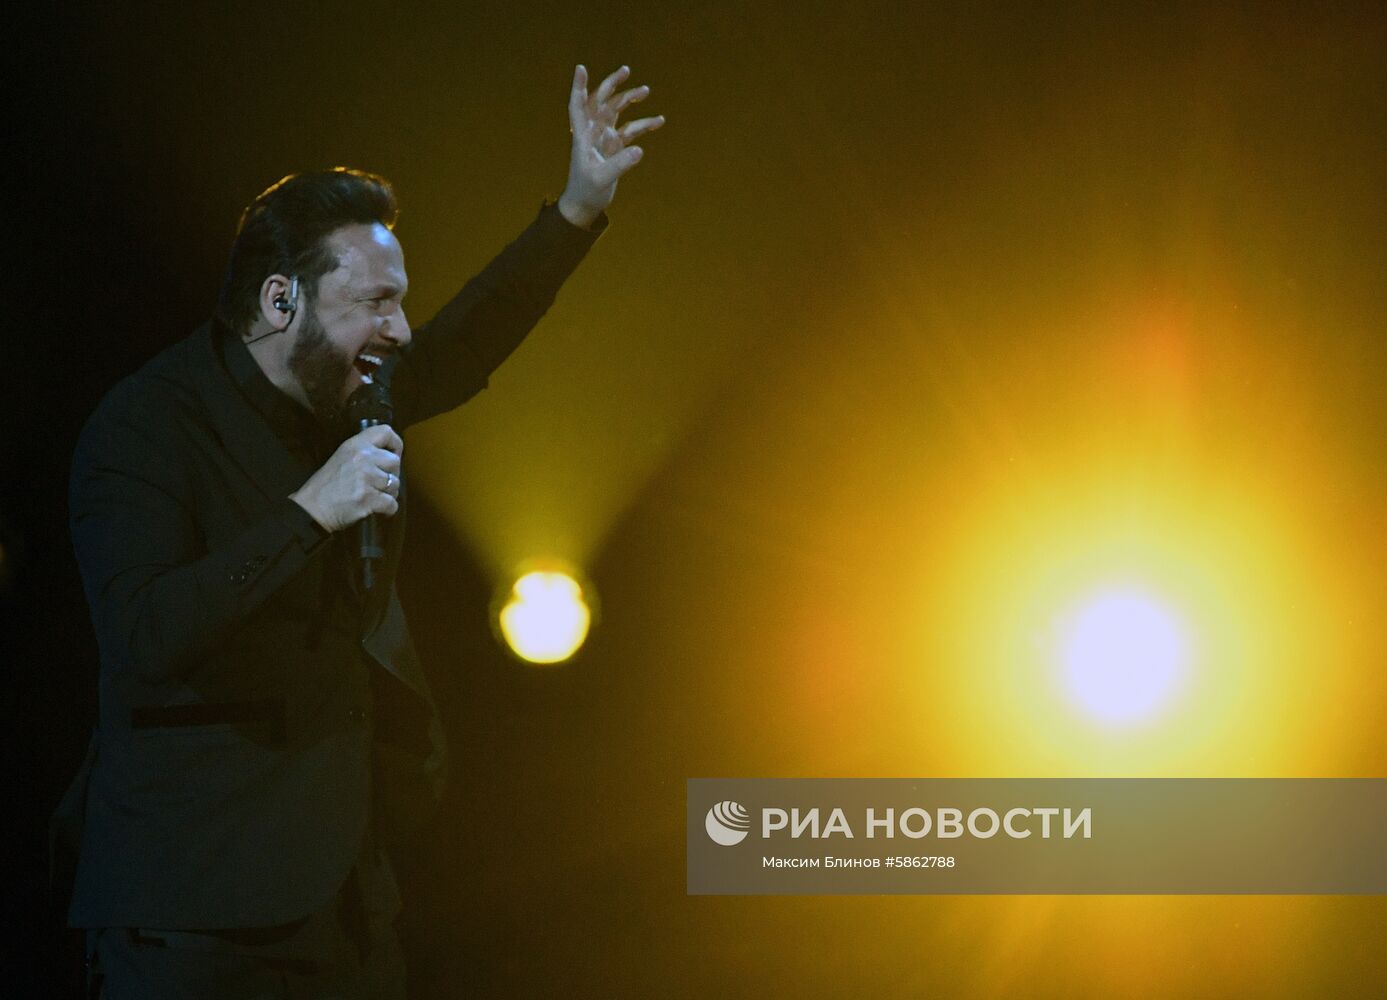 Юбилейный концерт Стаса Михайлова